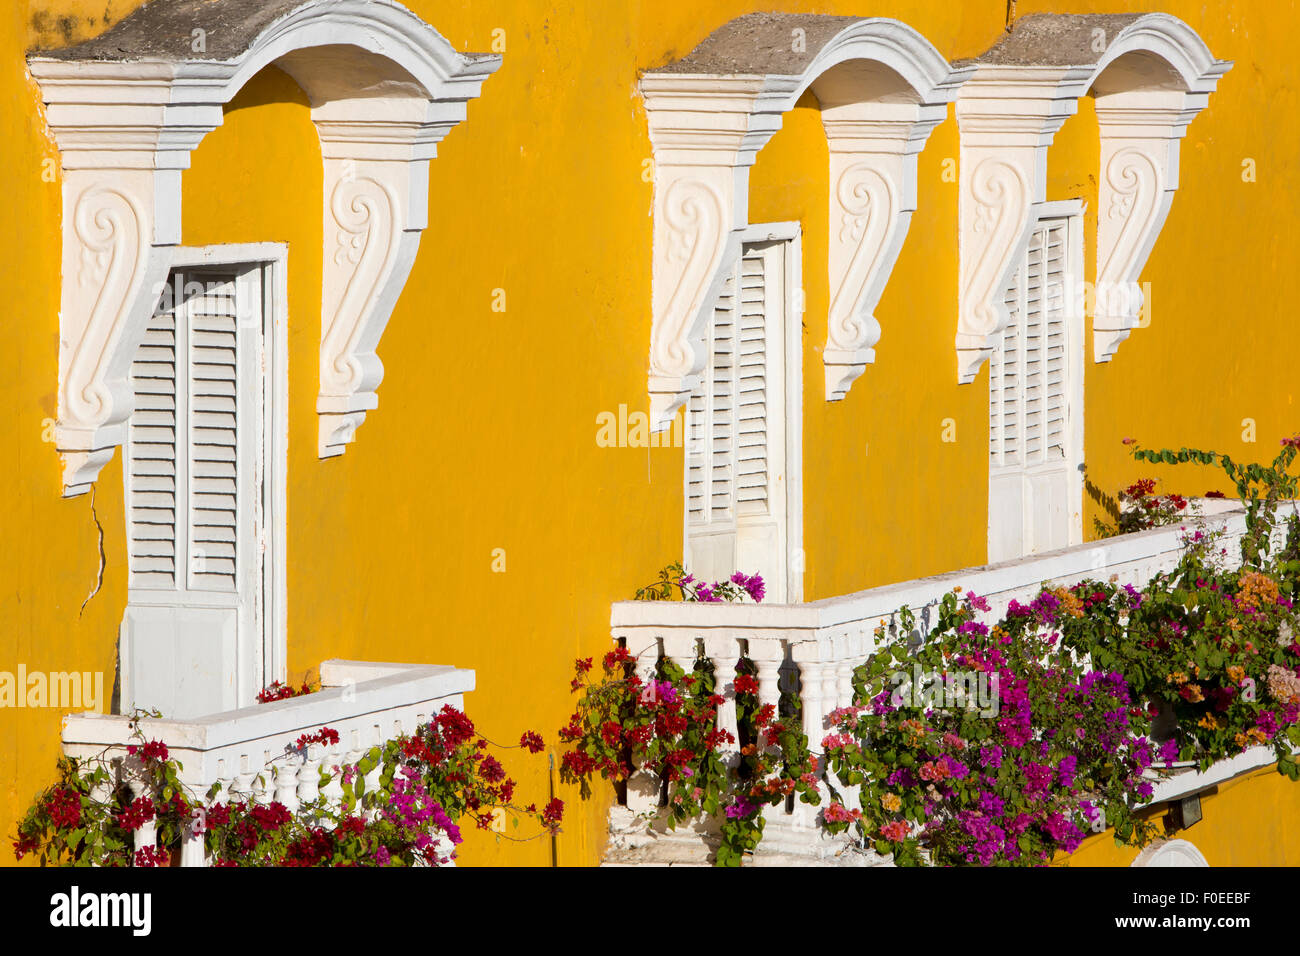 Cartagena - die koloniale Stadt in Kolumbien ist eine schön gedeckten Stadt, vollgepackt mit historischen Denkmälern und architektonischen Schatz Stockfoto